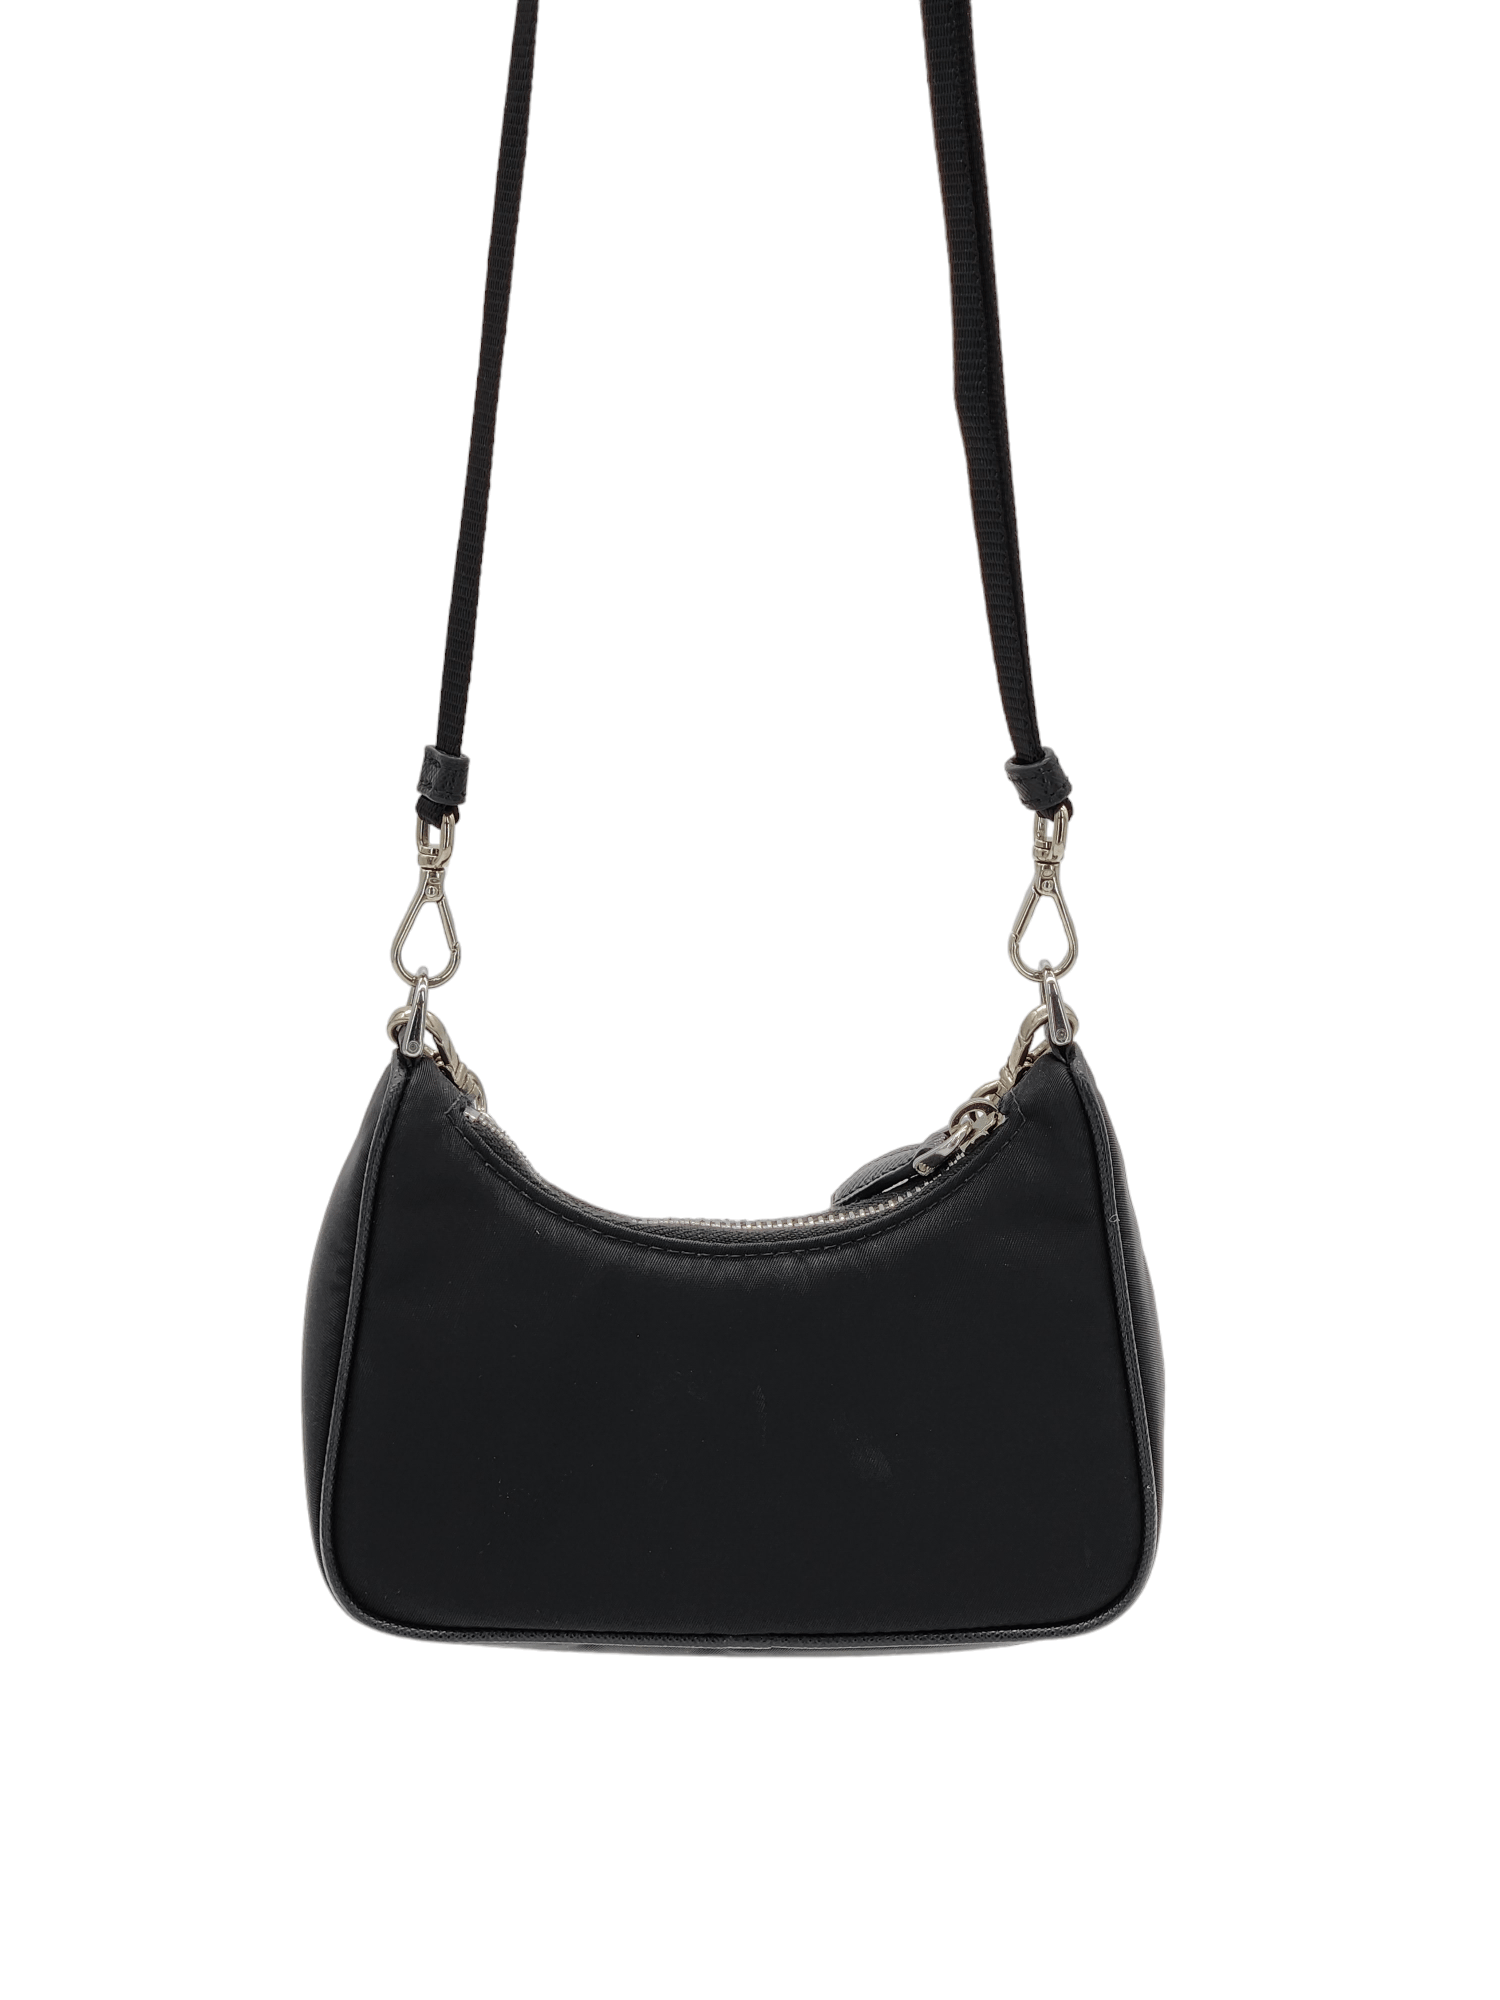 Prada Black Nylon Chain Mini Shoulder Bag